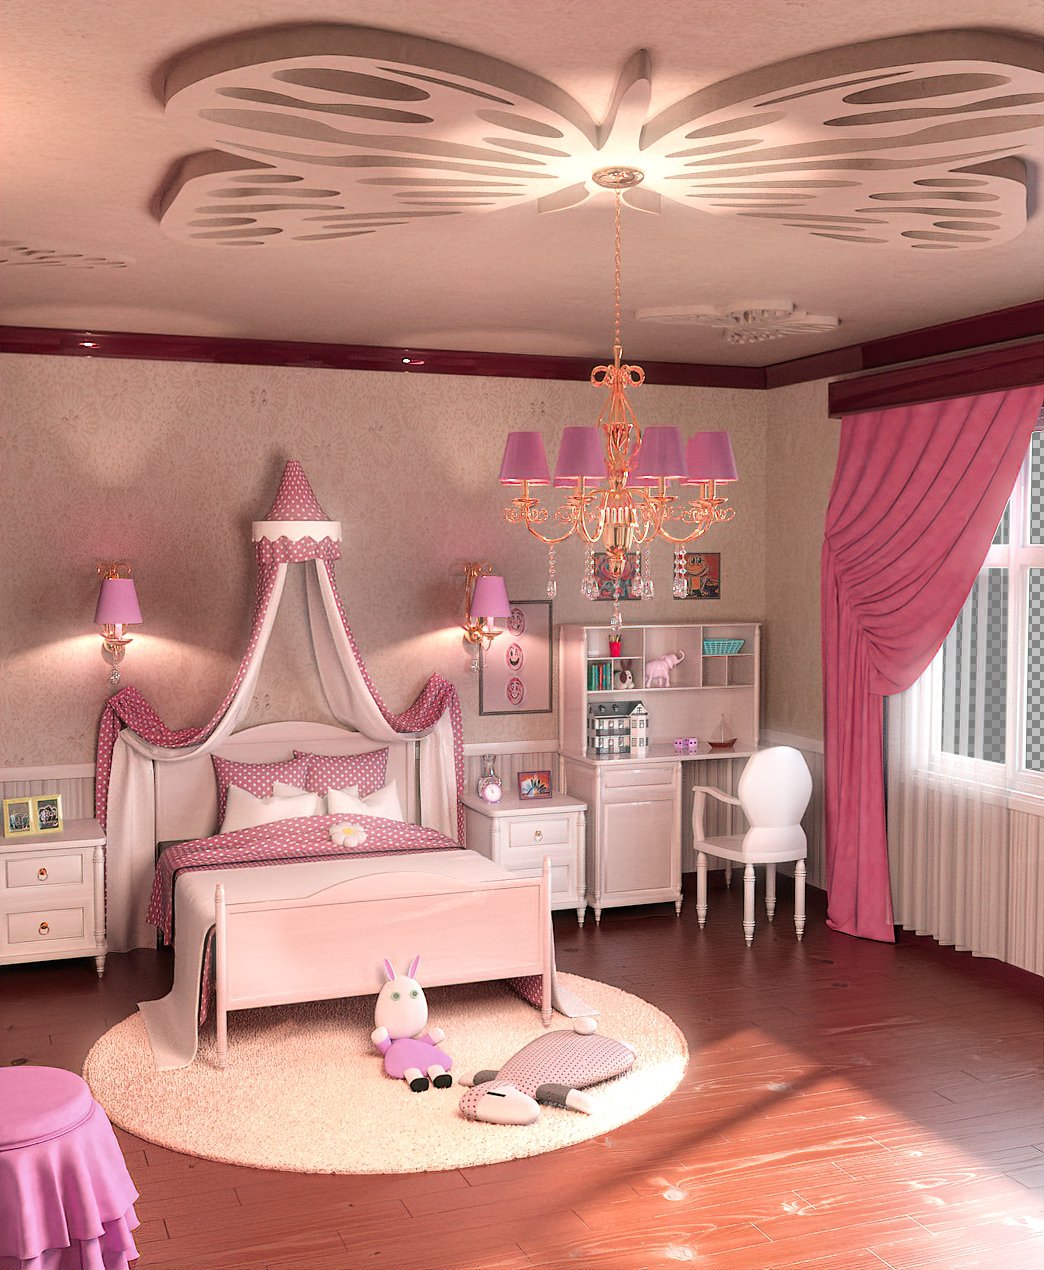 FG Princess Room | Daz 3D